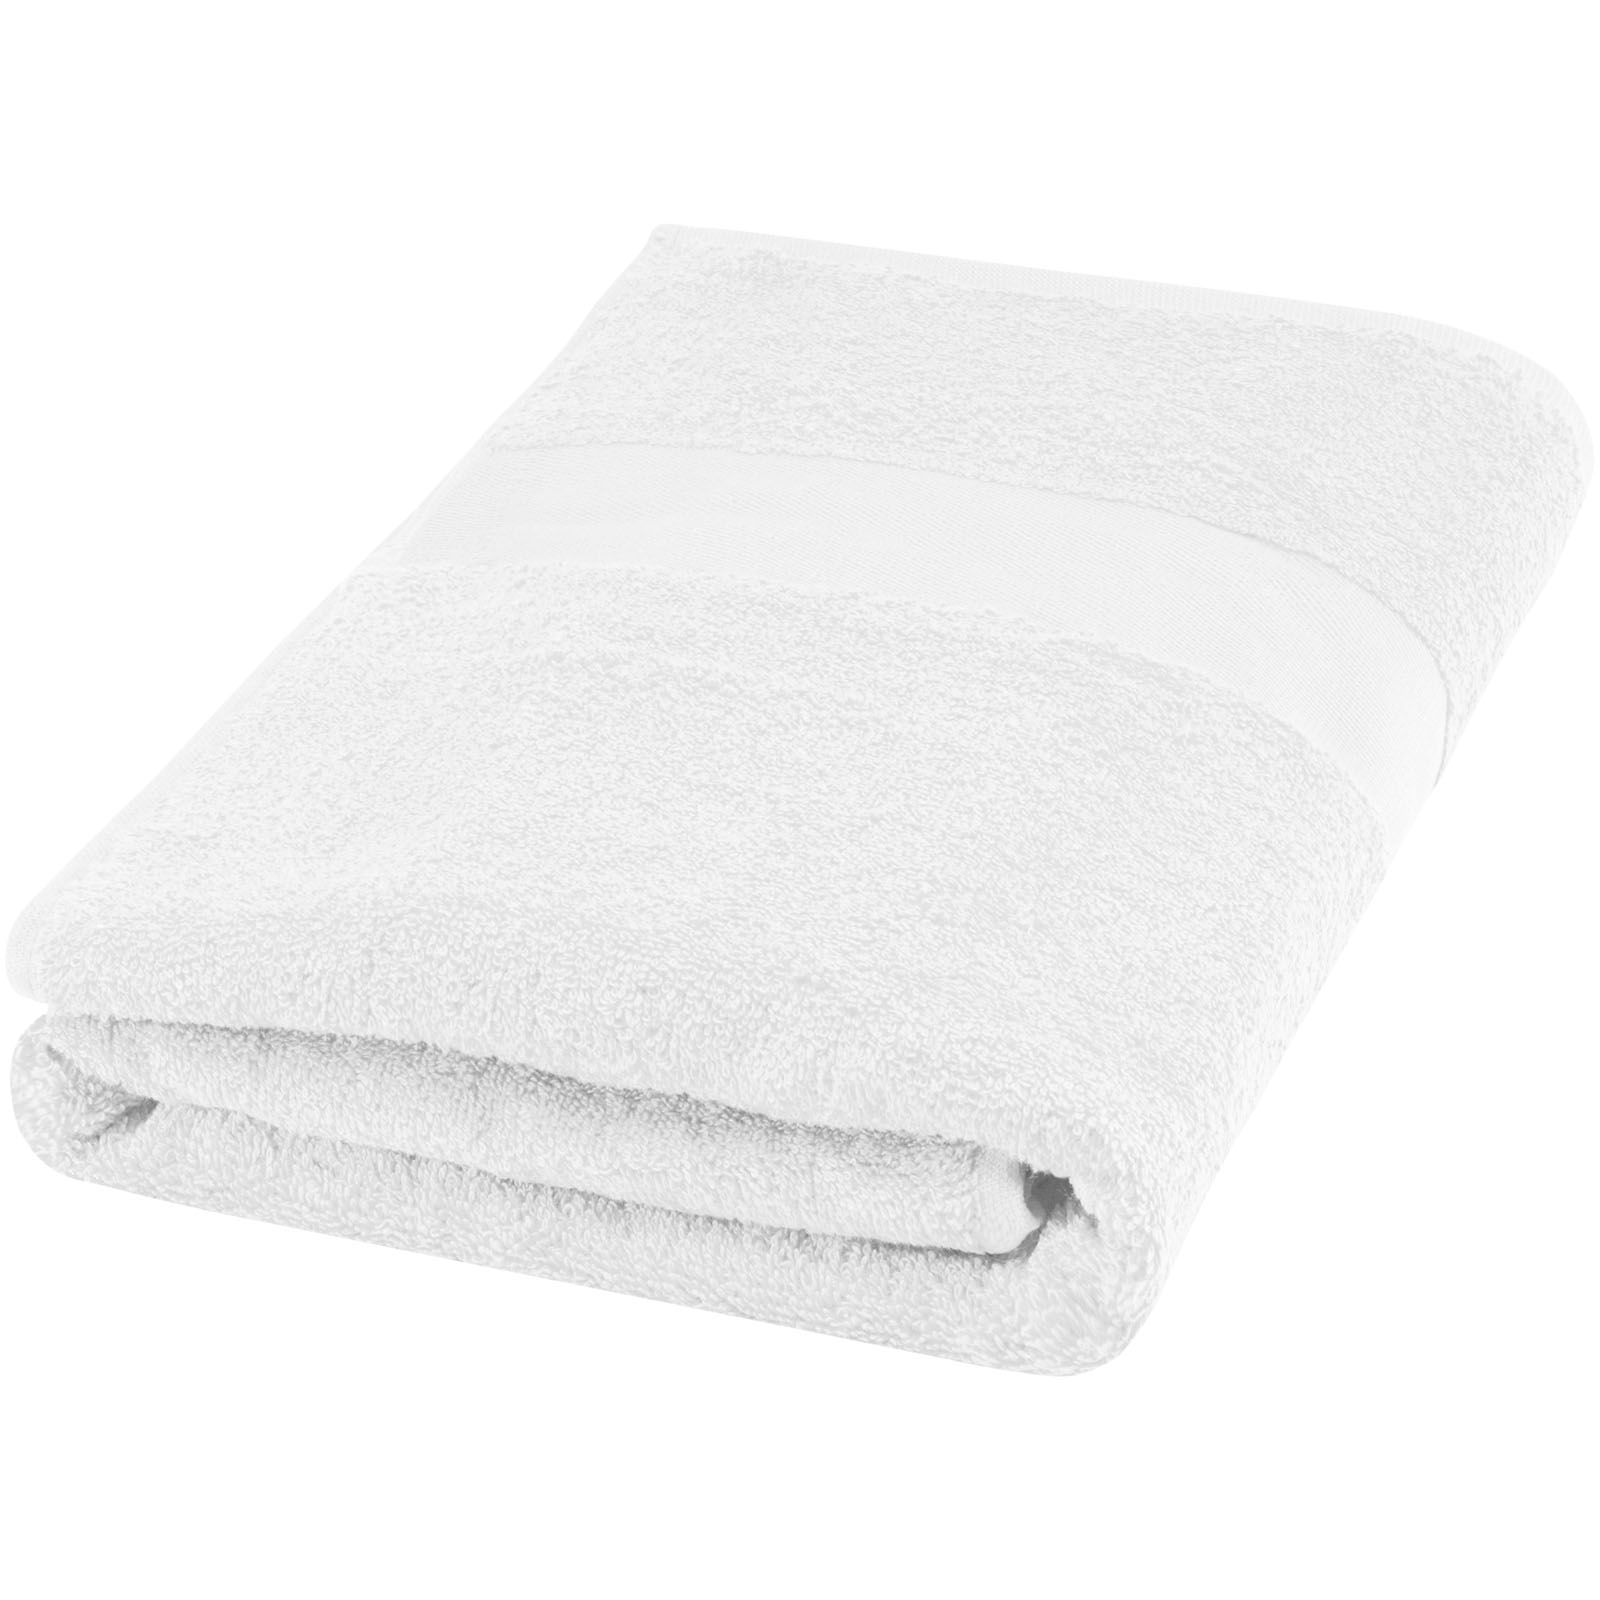 Towels - Amelia 450 g/m² cotton towel 70x140 cm